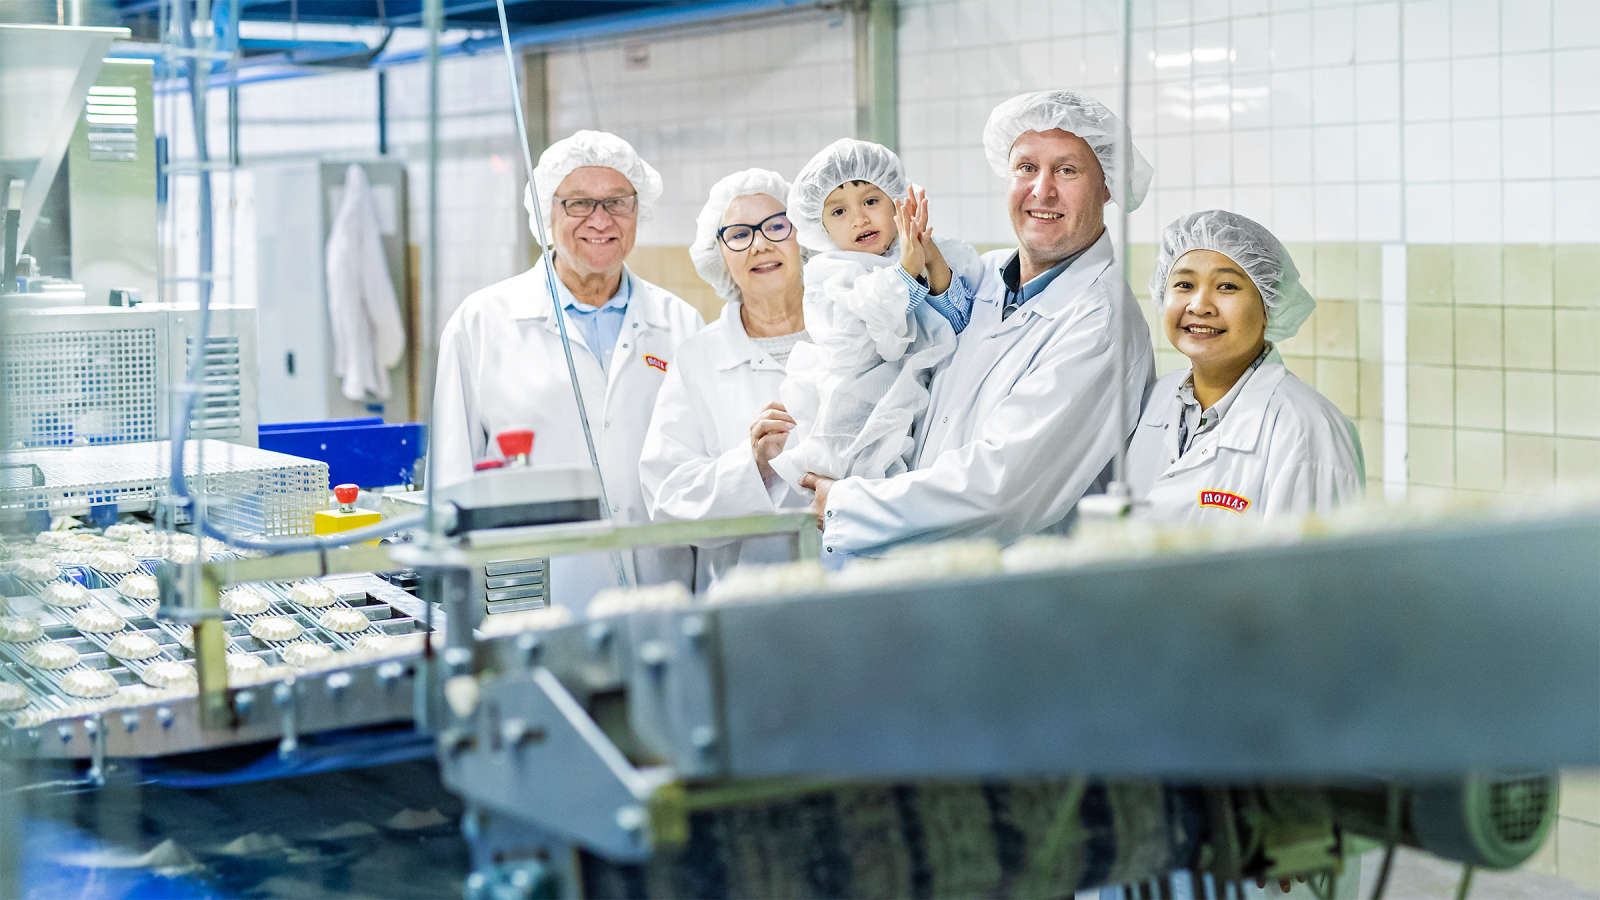 Moilas-leipomon yrittäjäperhe luotsaa toimintaa kansainvälisille markkinoille